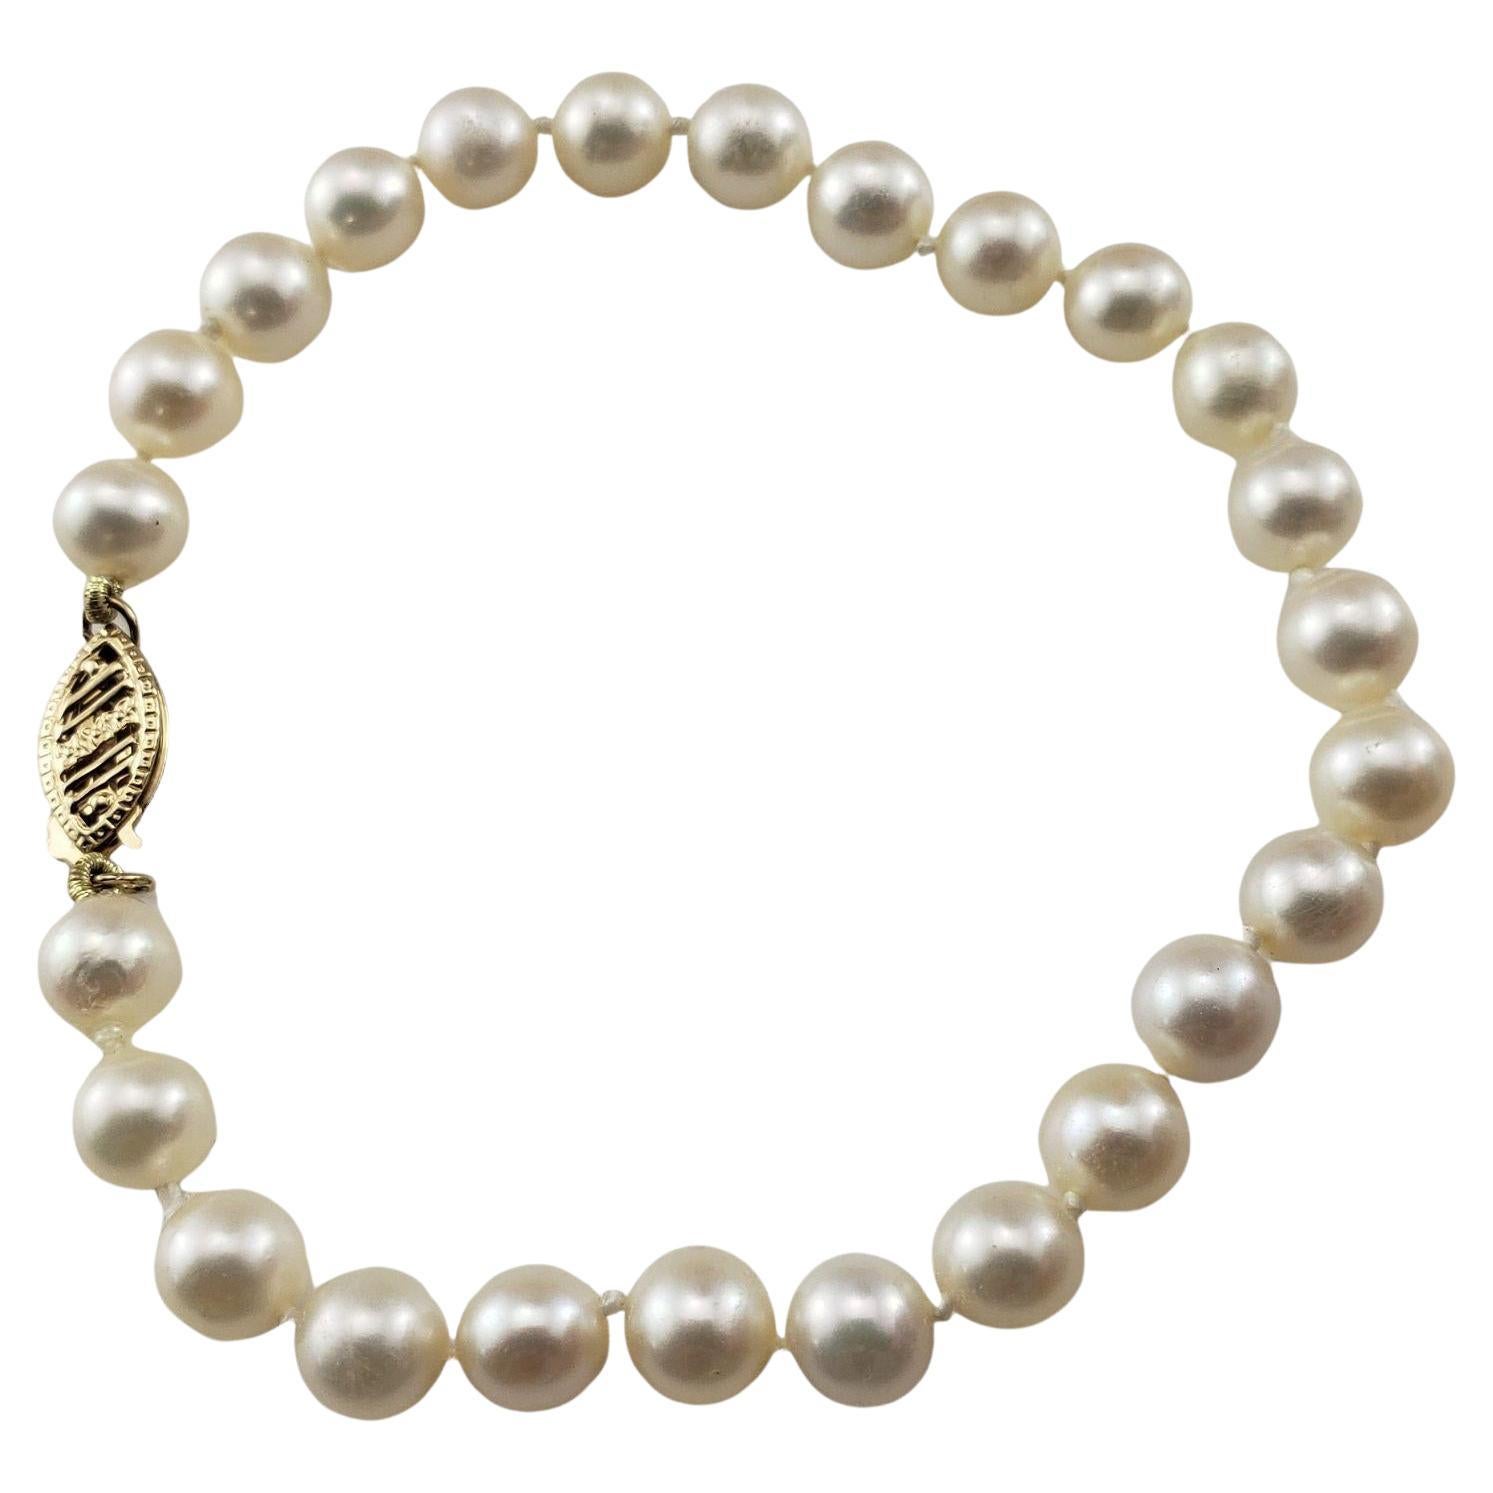  Bracelet perles en or jaune 14 carats n° 15105